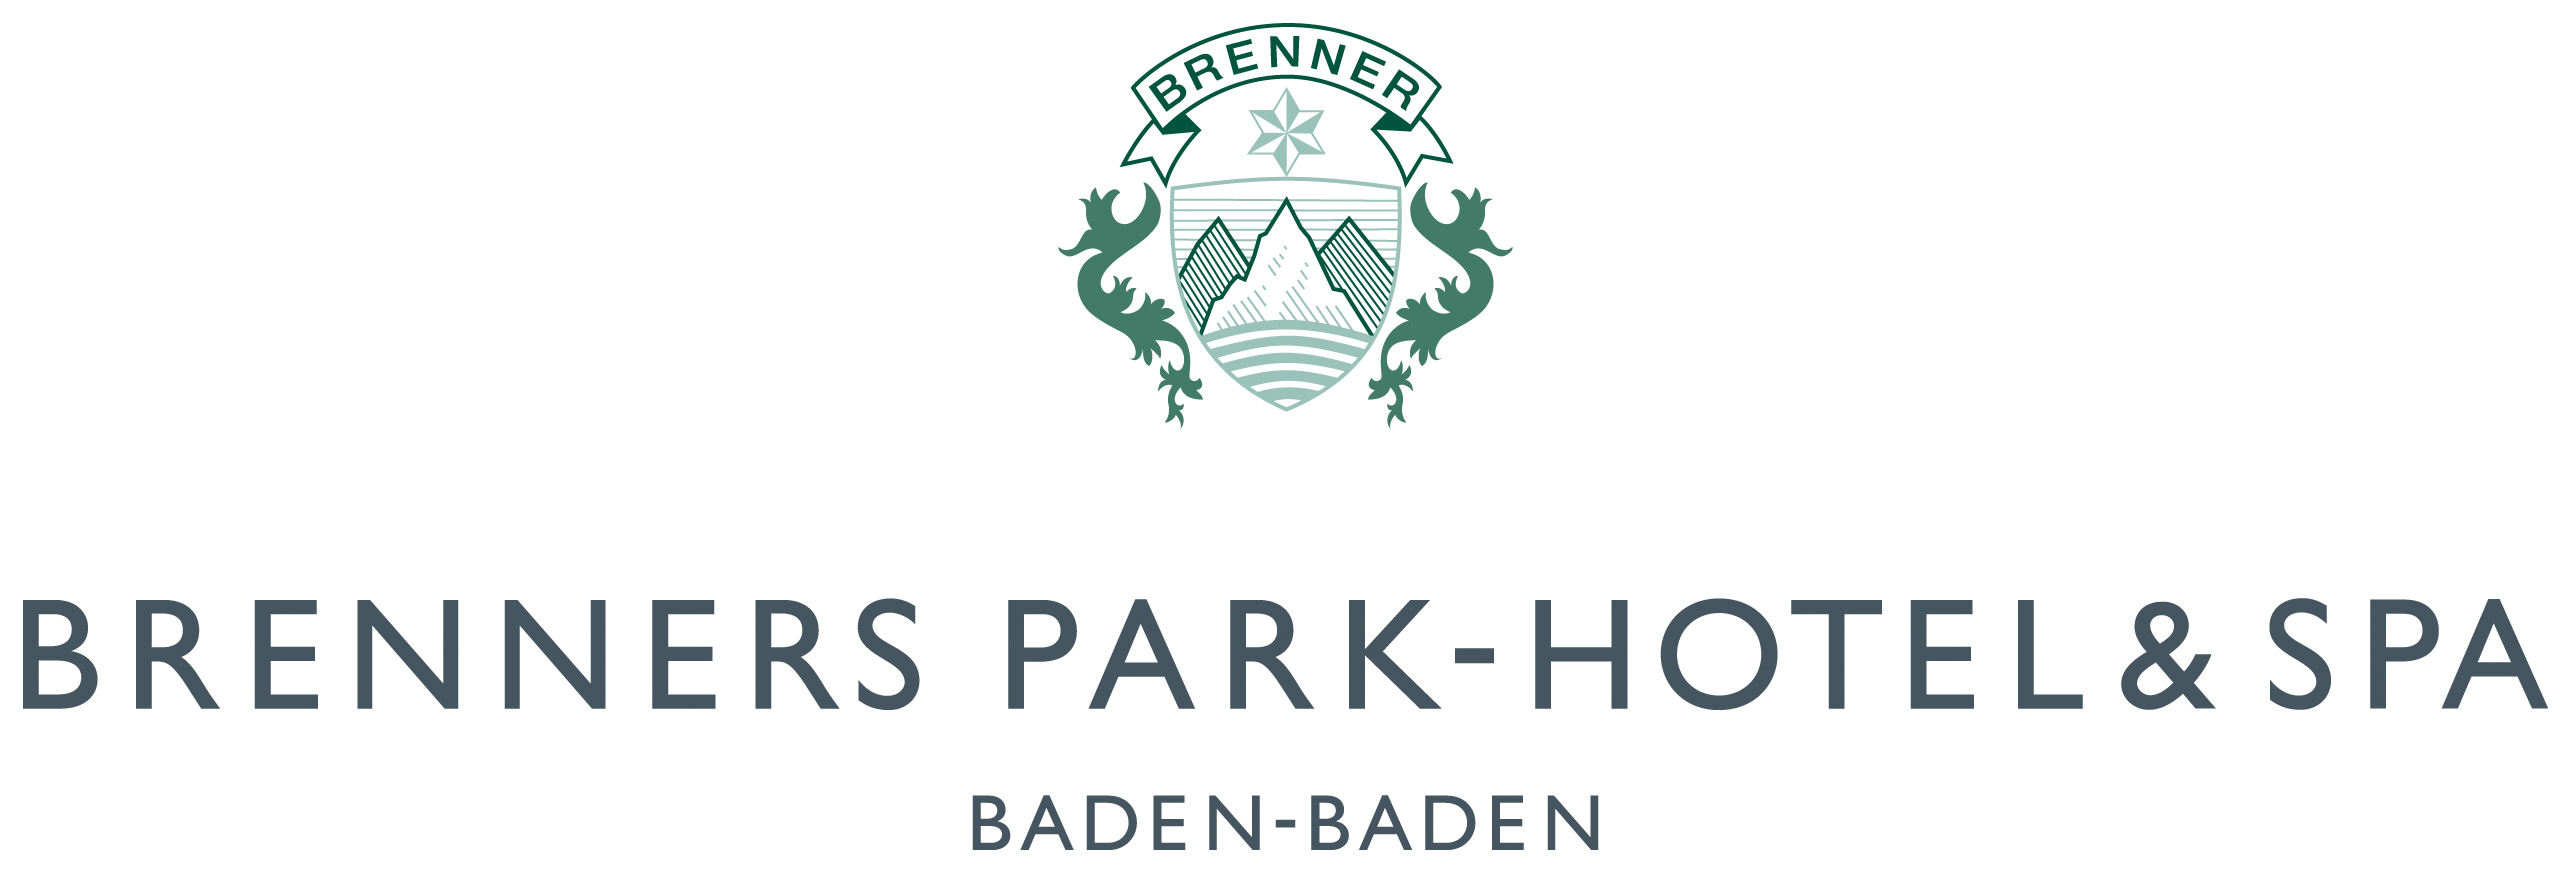 Brenners Park-Hotel & SPA, Баден-Баден 